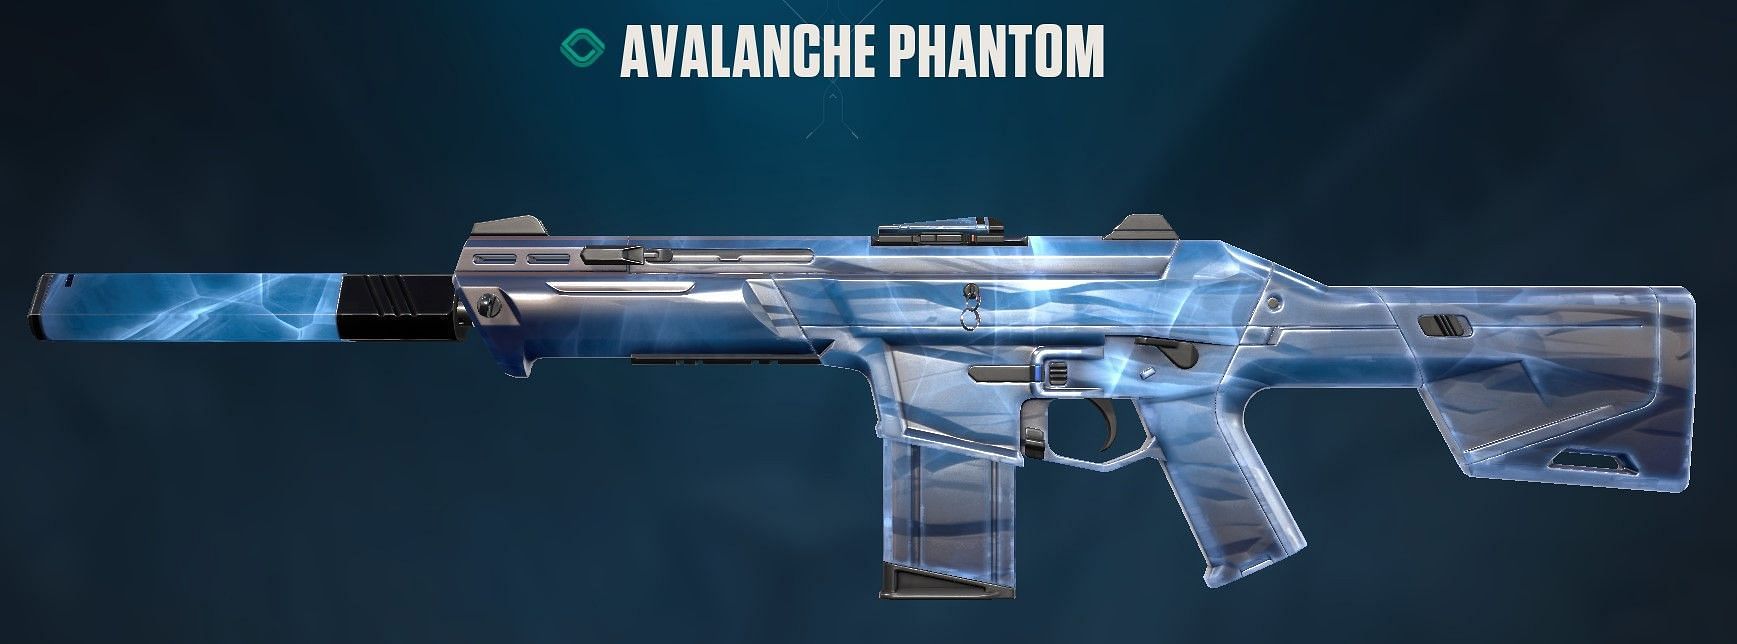 Avalanche Phantom (Image via Riot Games)